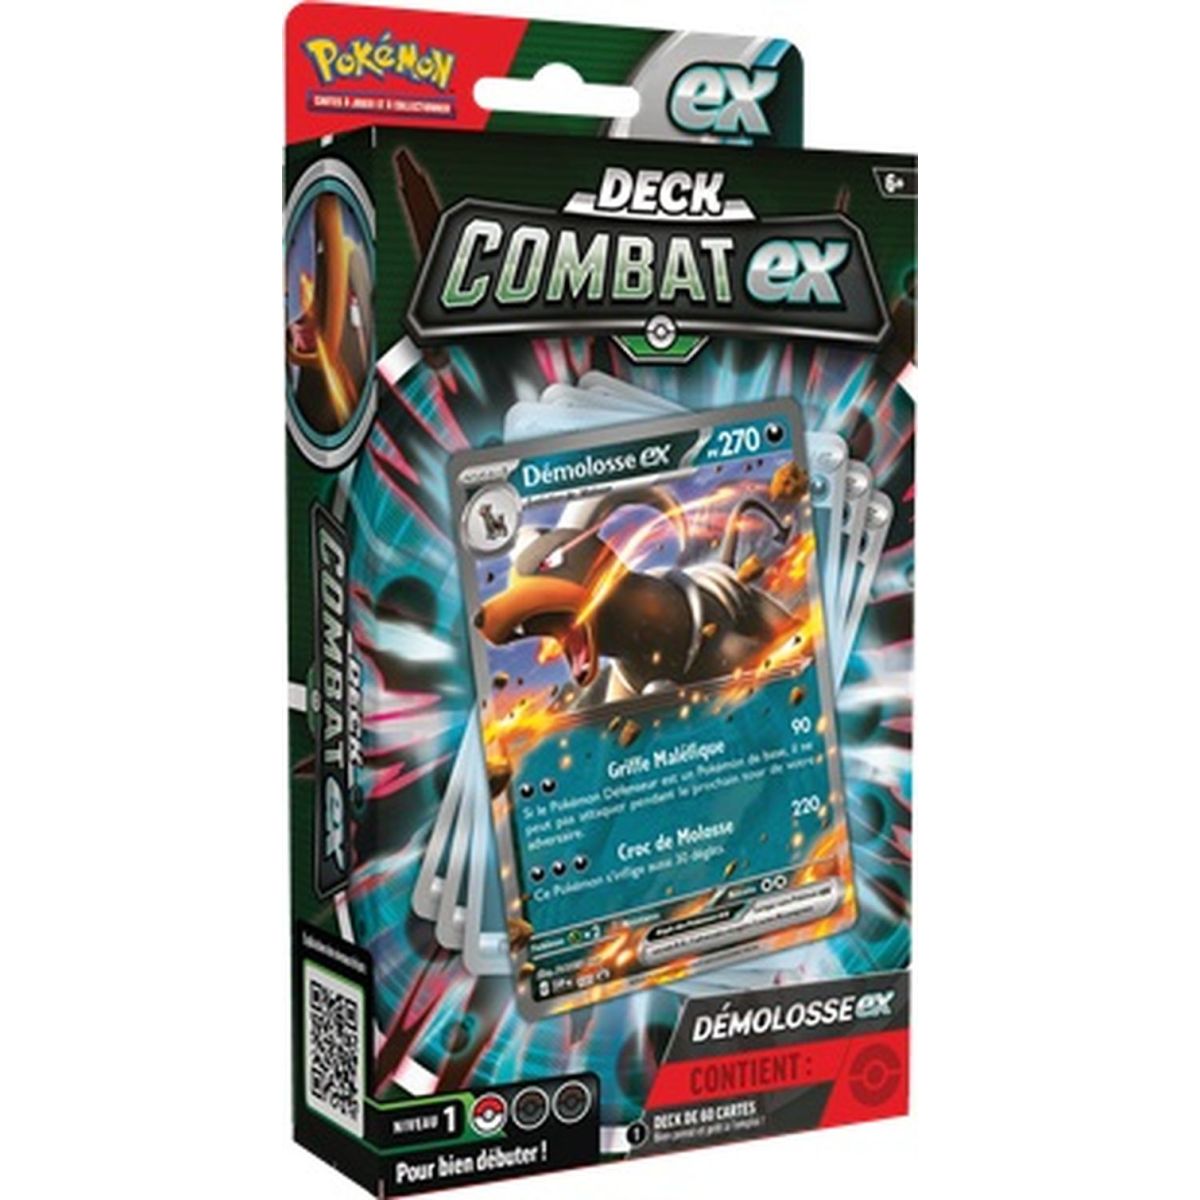 Pokémon - Deck Combat EX - Démolosse Ex - FR